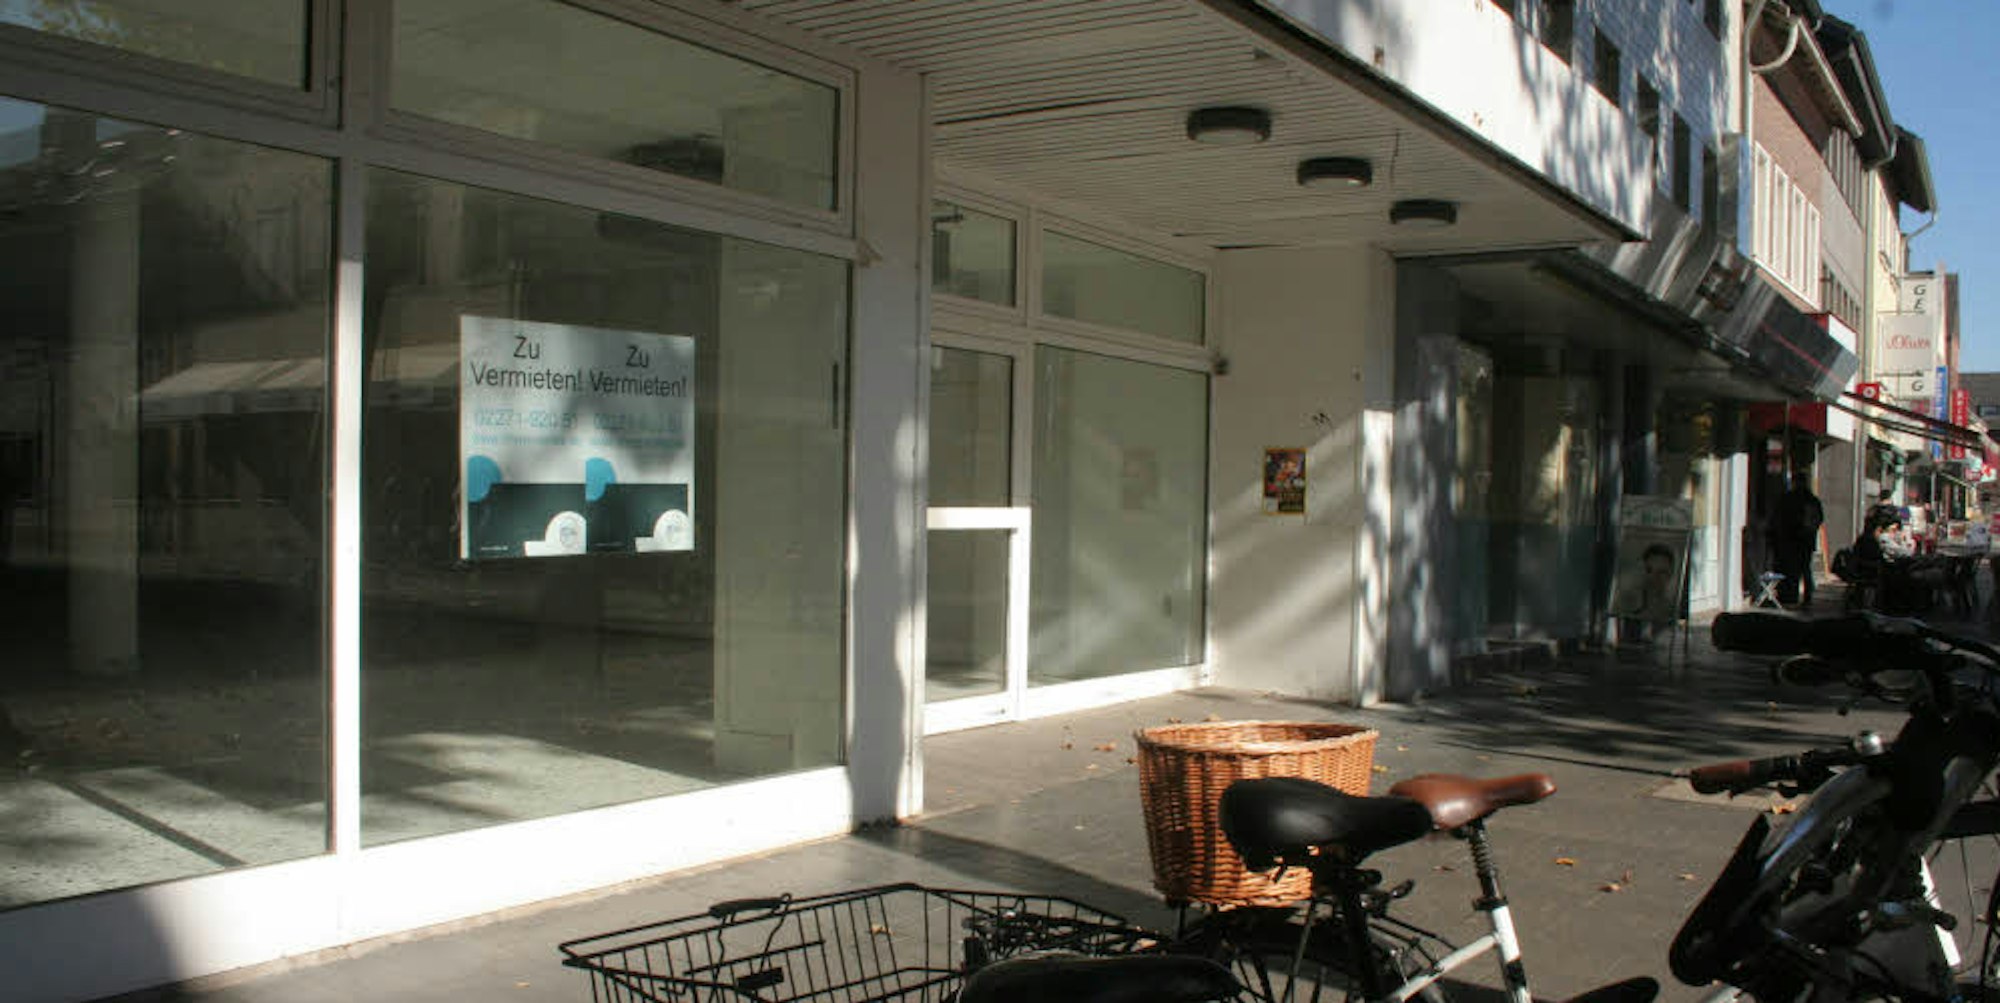 Gleich drei leere Ladenlokale in einer Reihe befinden sich gegenüber der Georgskapelle in der Fußgängerzone.